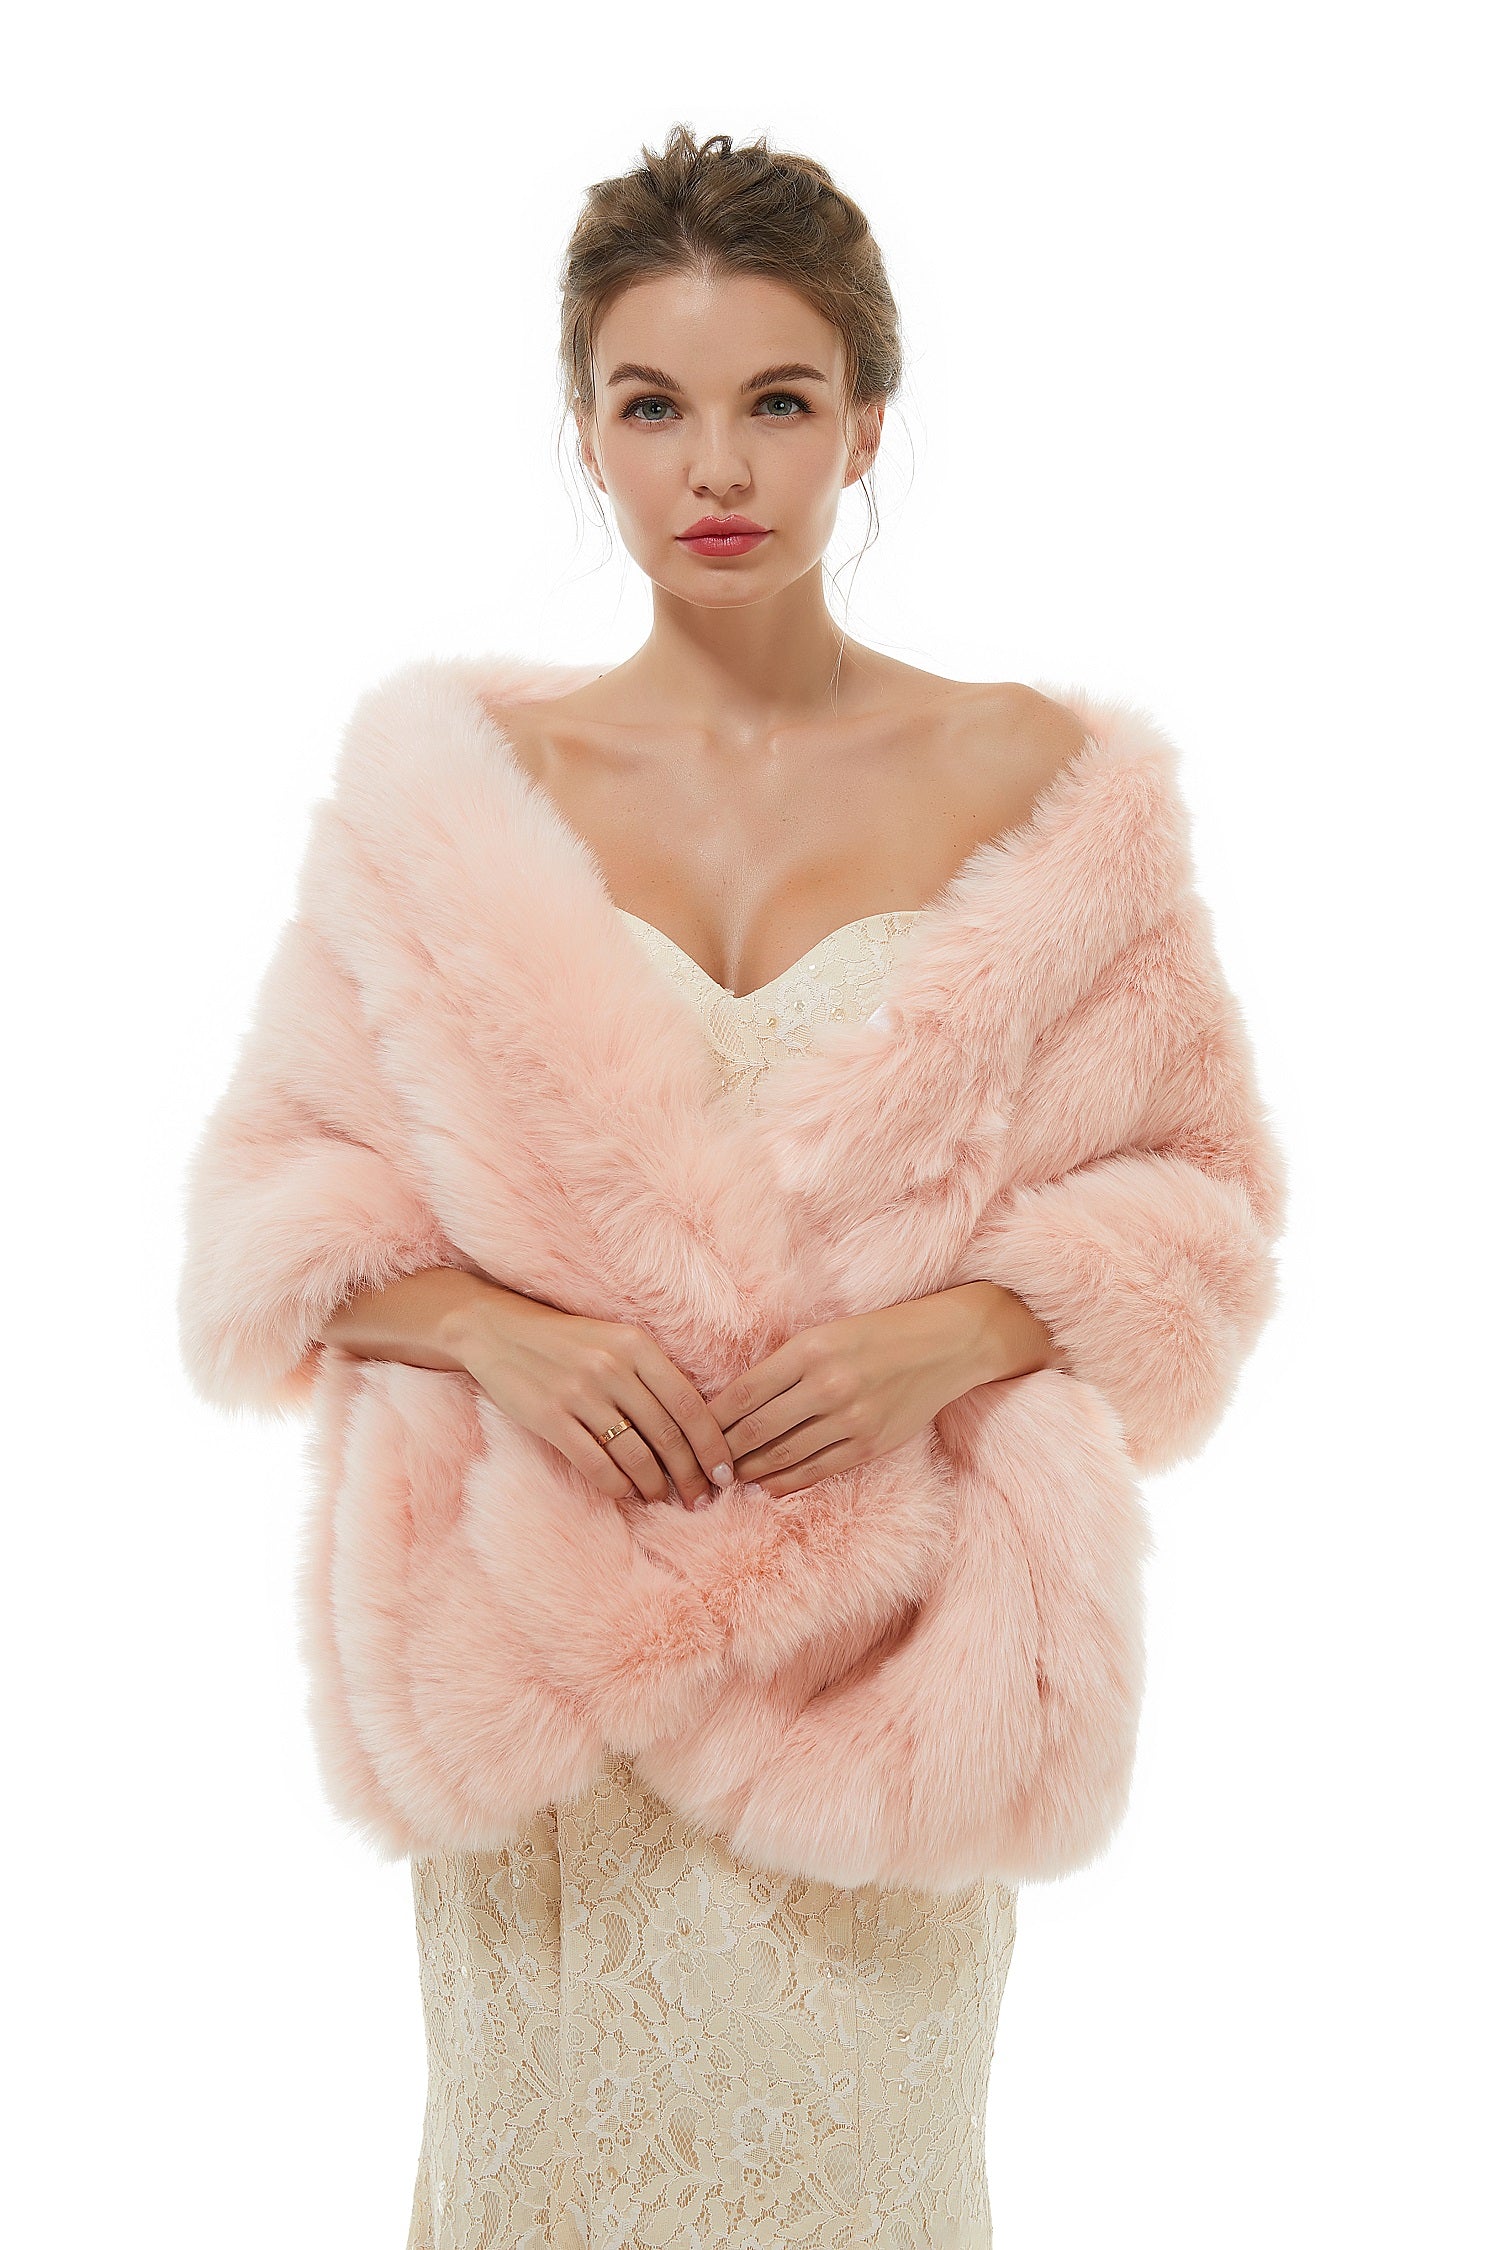 Pretty Faux Fur Wedding Wrap for Winter - lulusllly